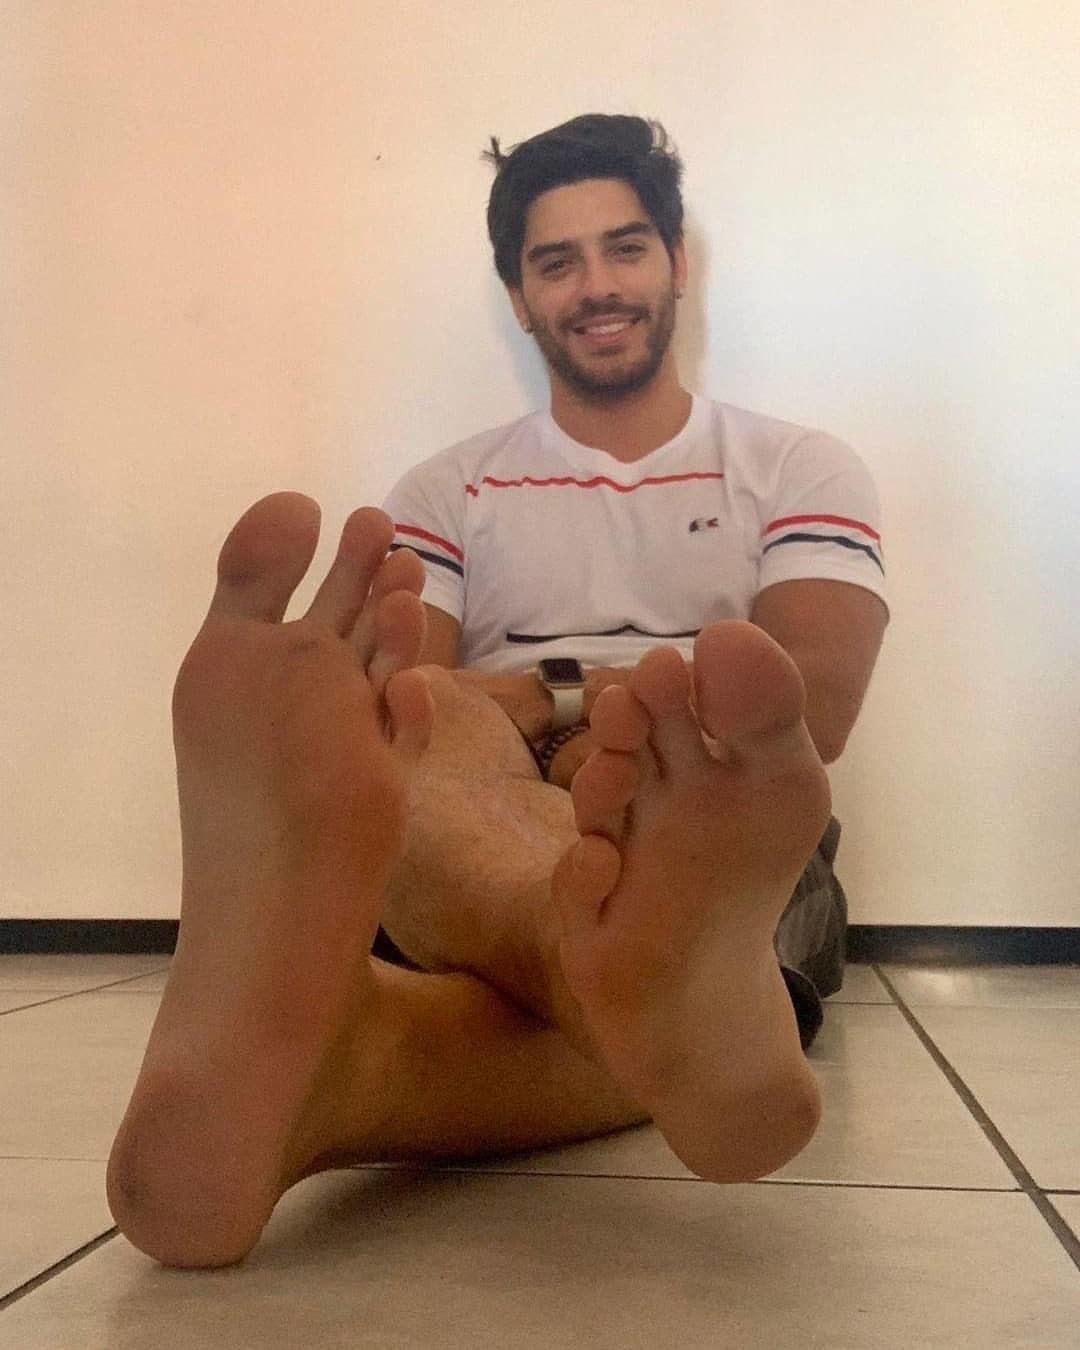 Onlyfans male feet